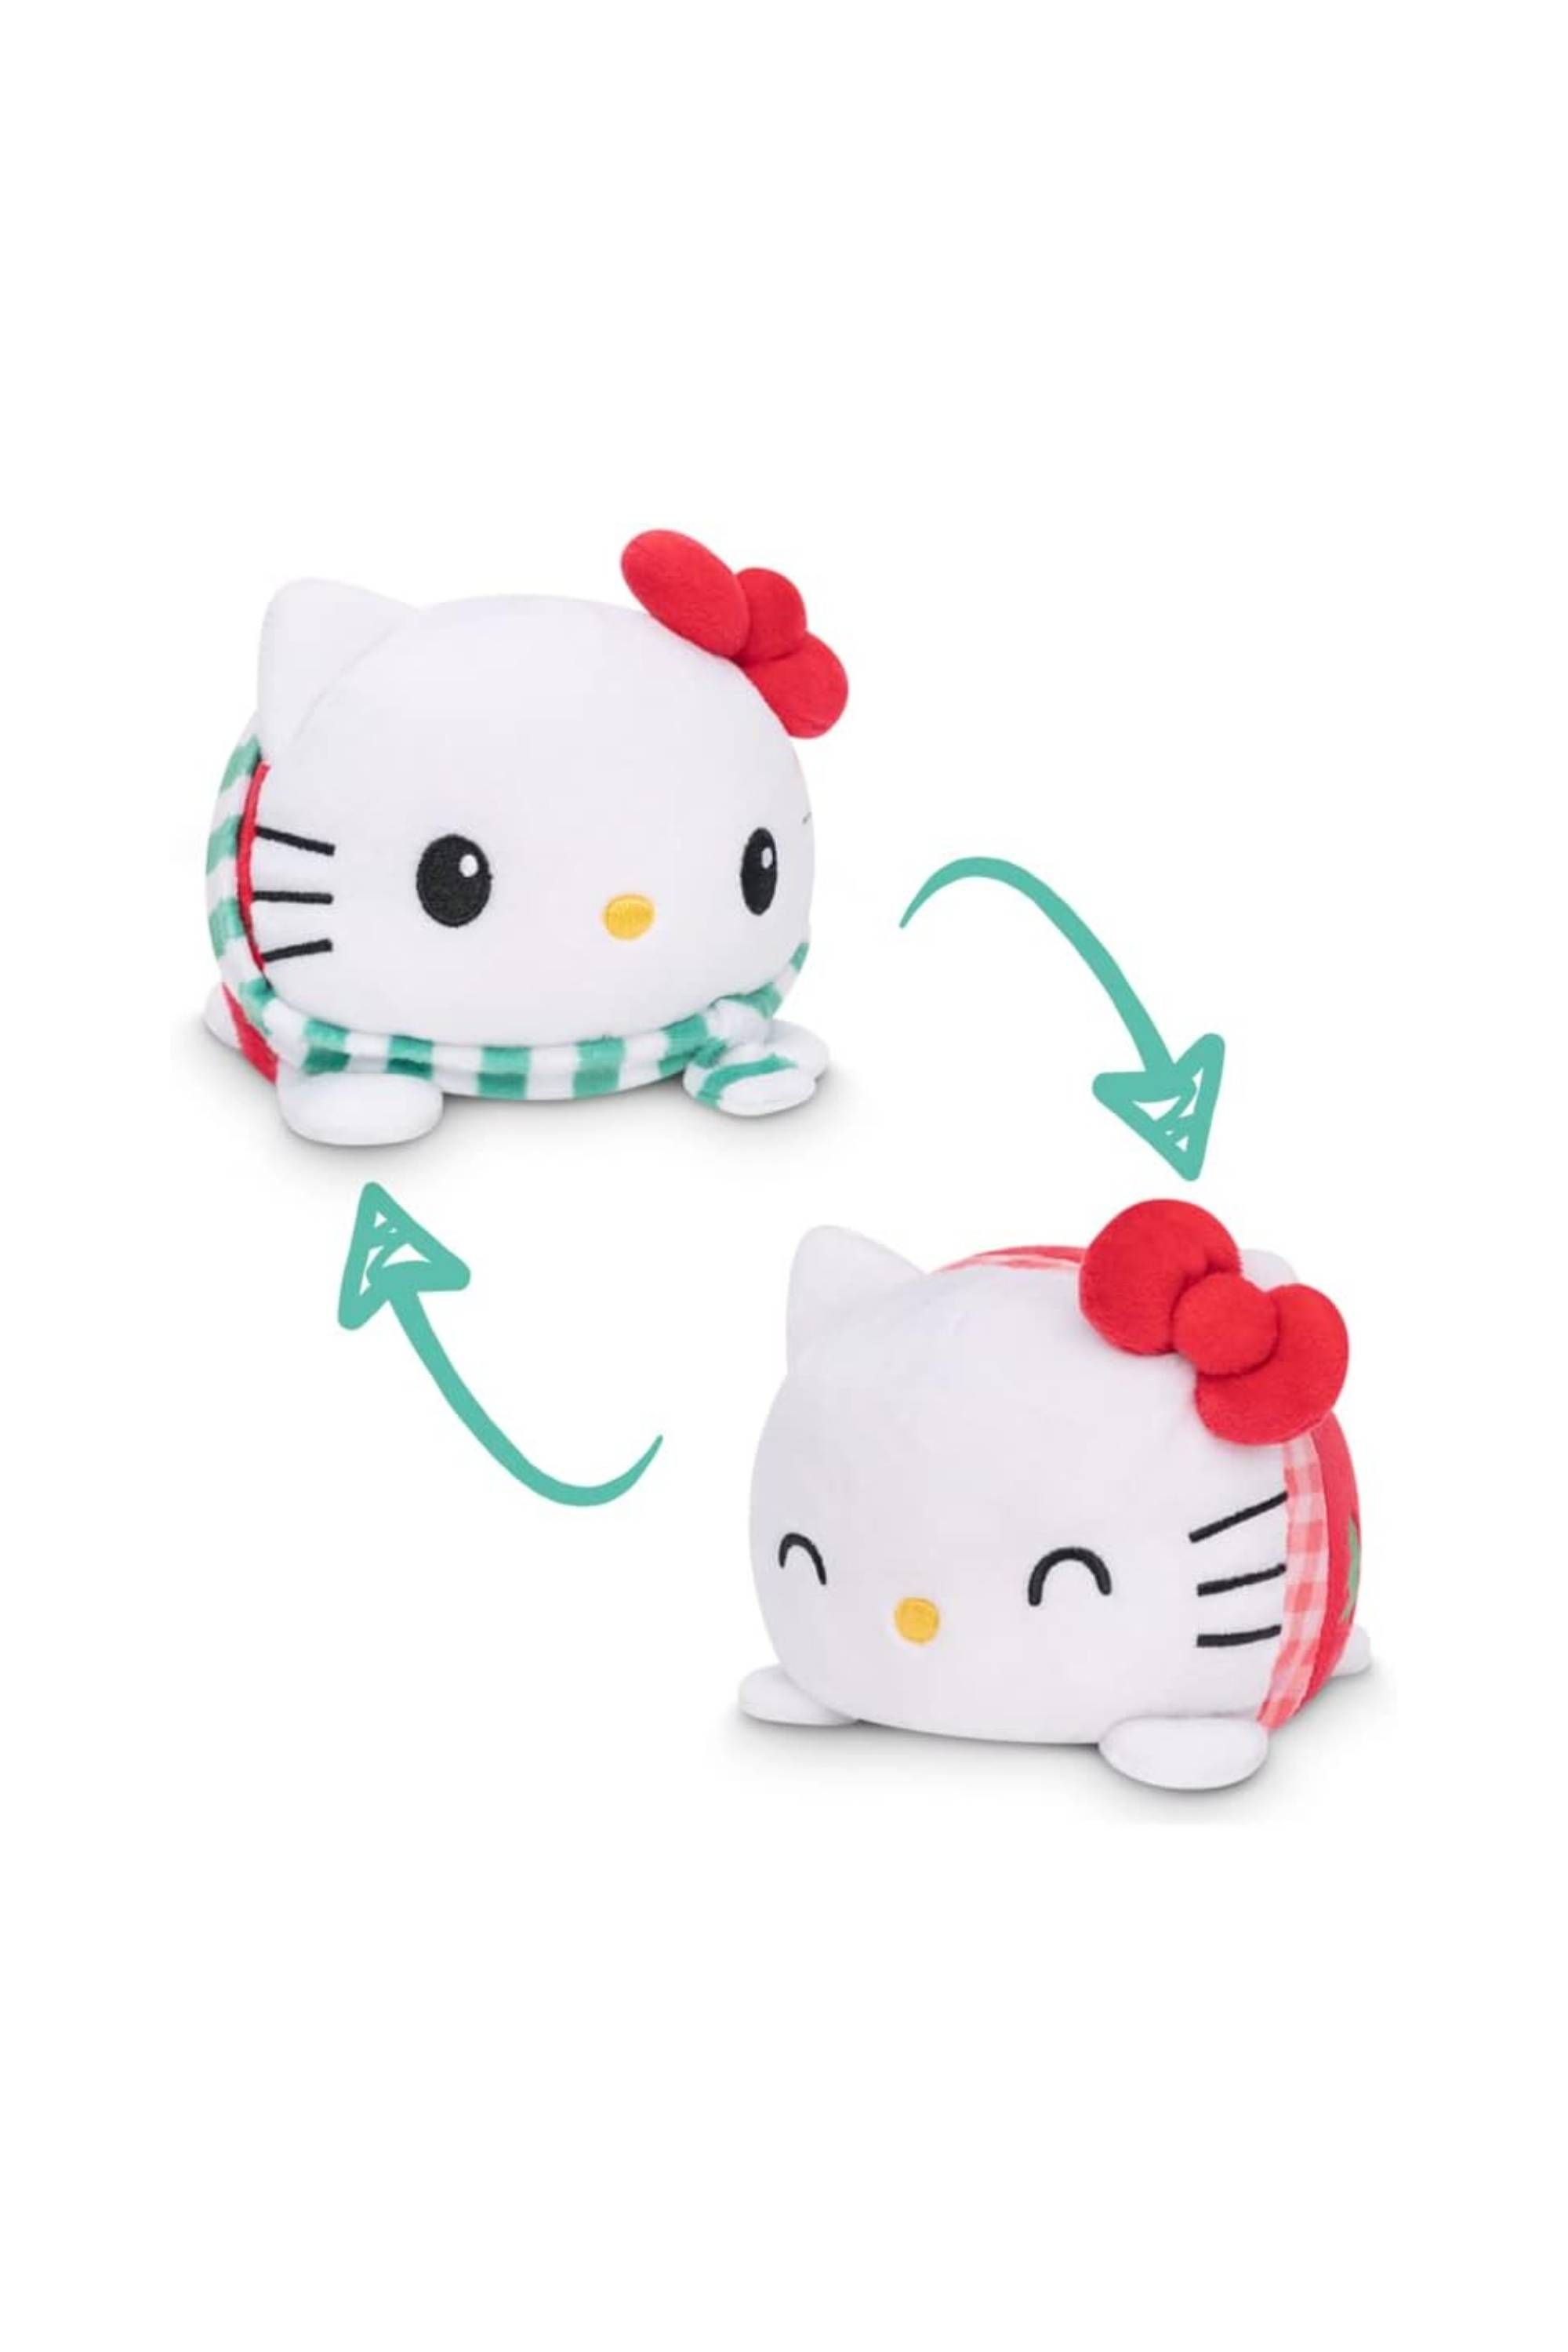 TeeTurtle Sanrio Hello Kitty Christmas Tree + Snowflake Sweater Reversible Plushie